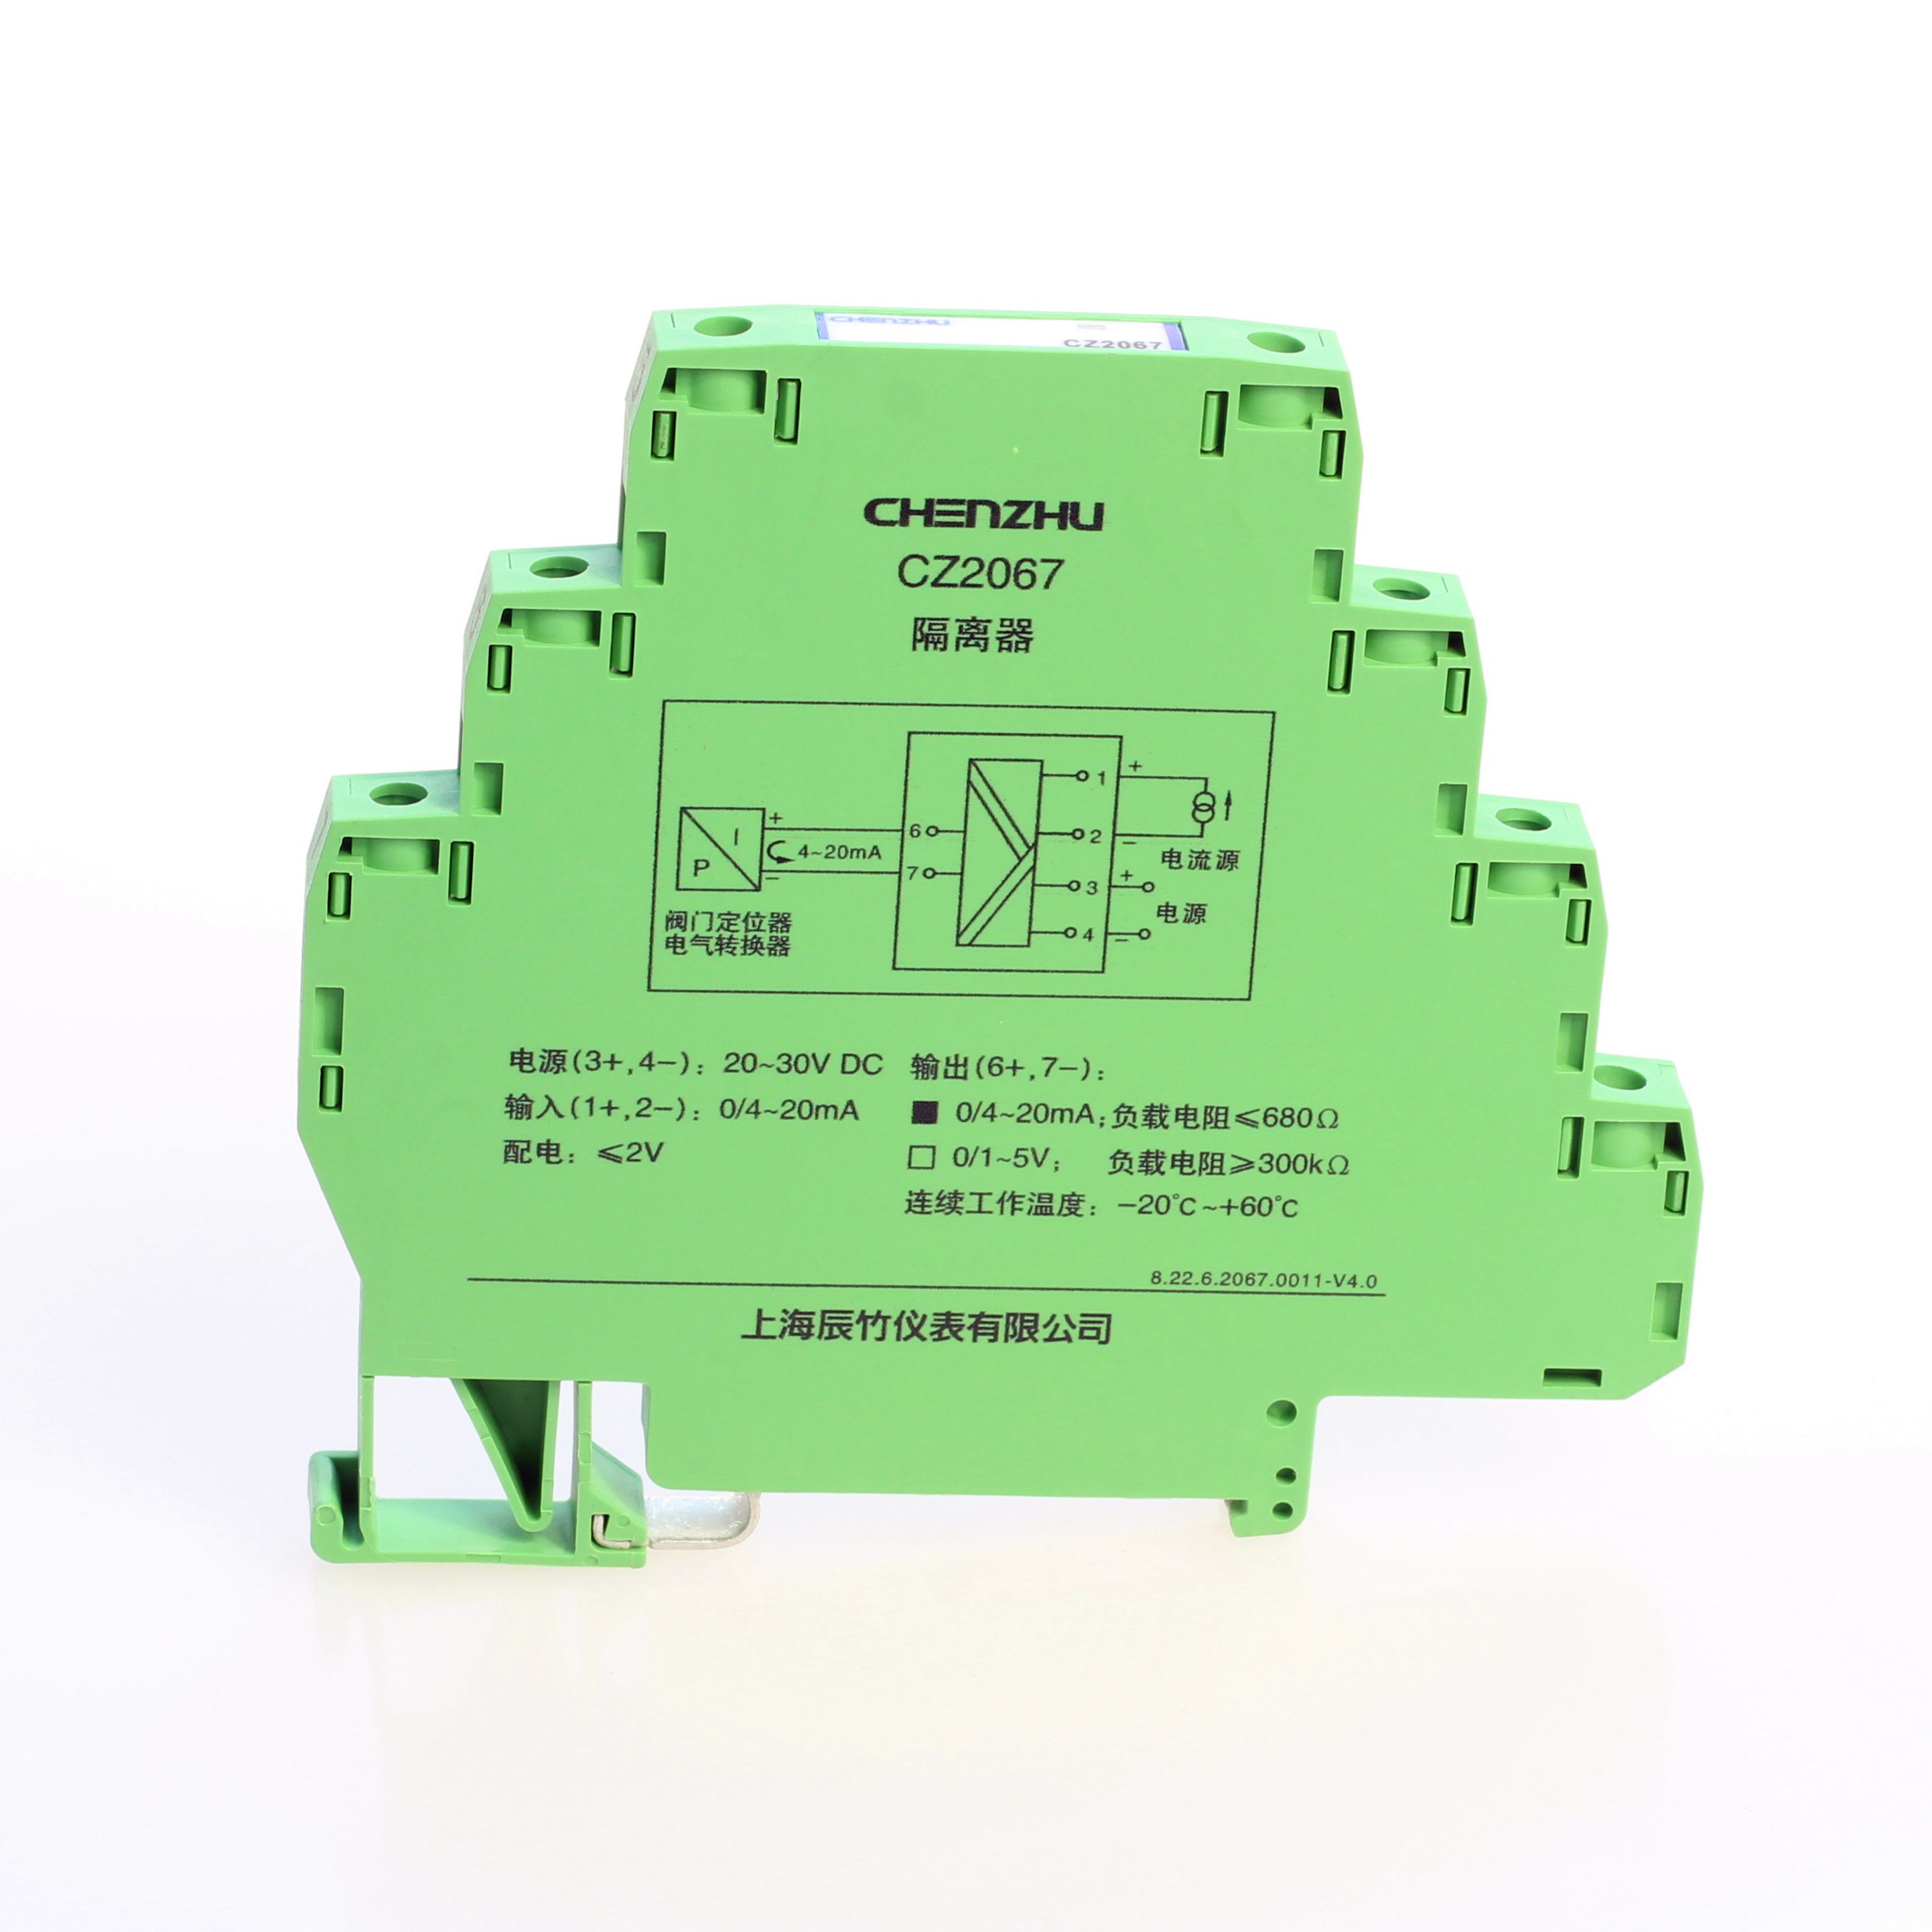 CZ2047-一进一出 模拟量输入隔离器-上海辰竹仪表有限公司